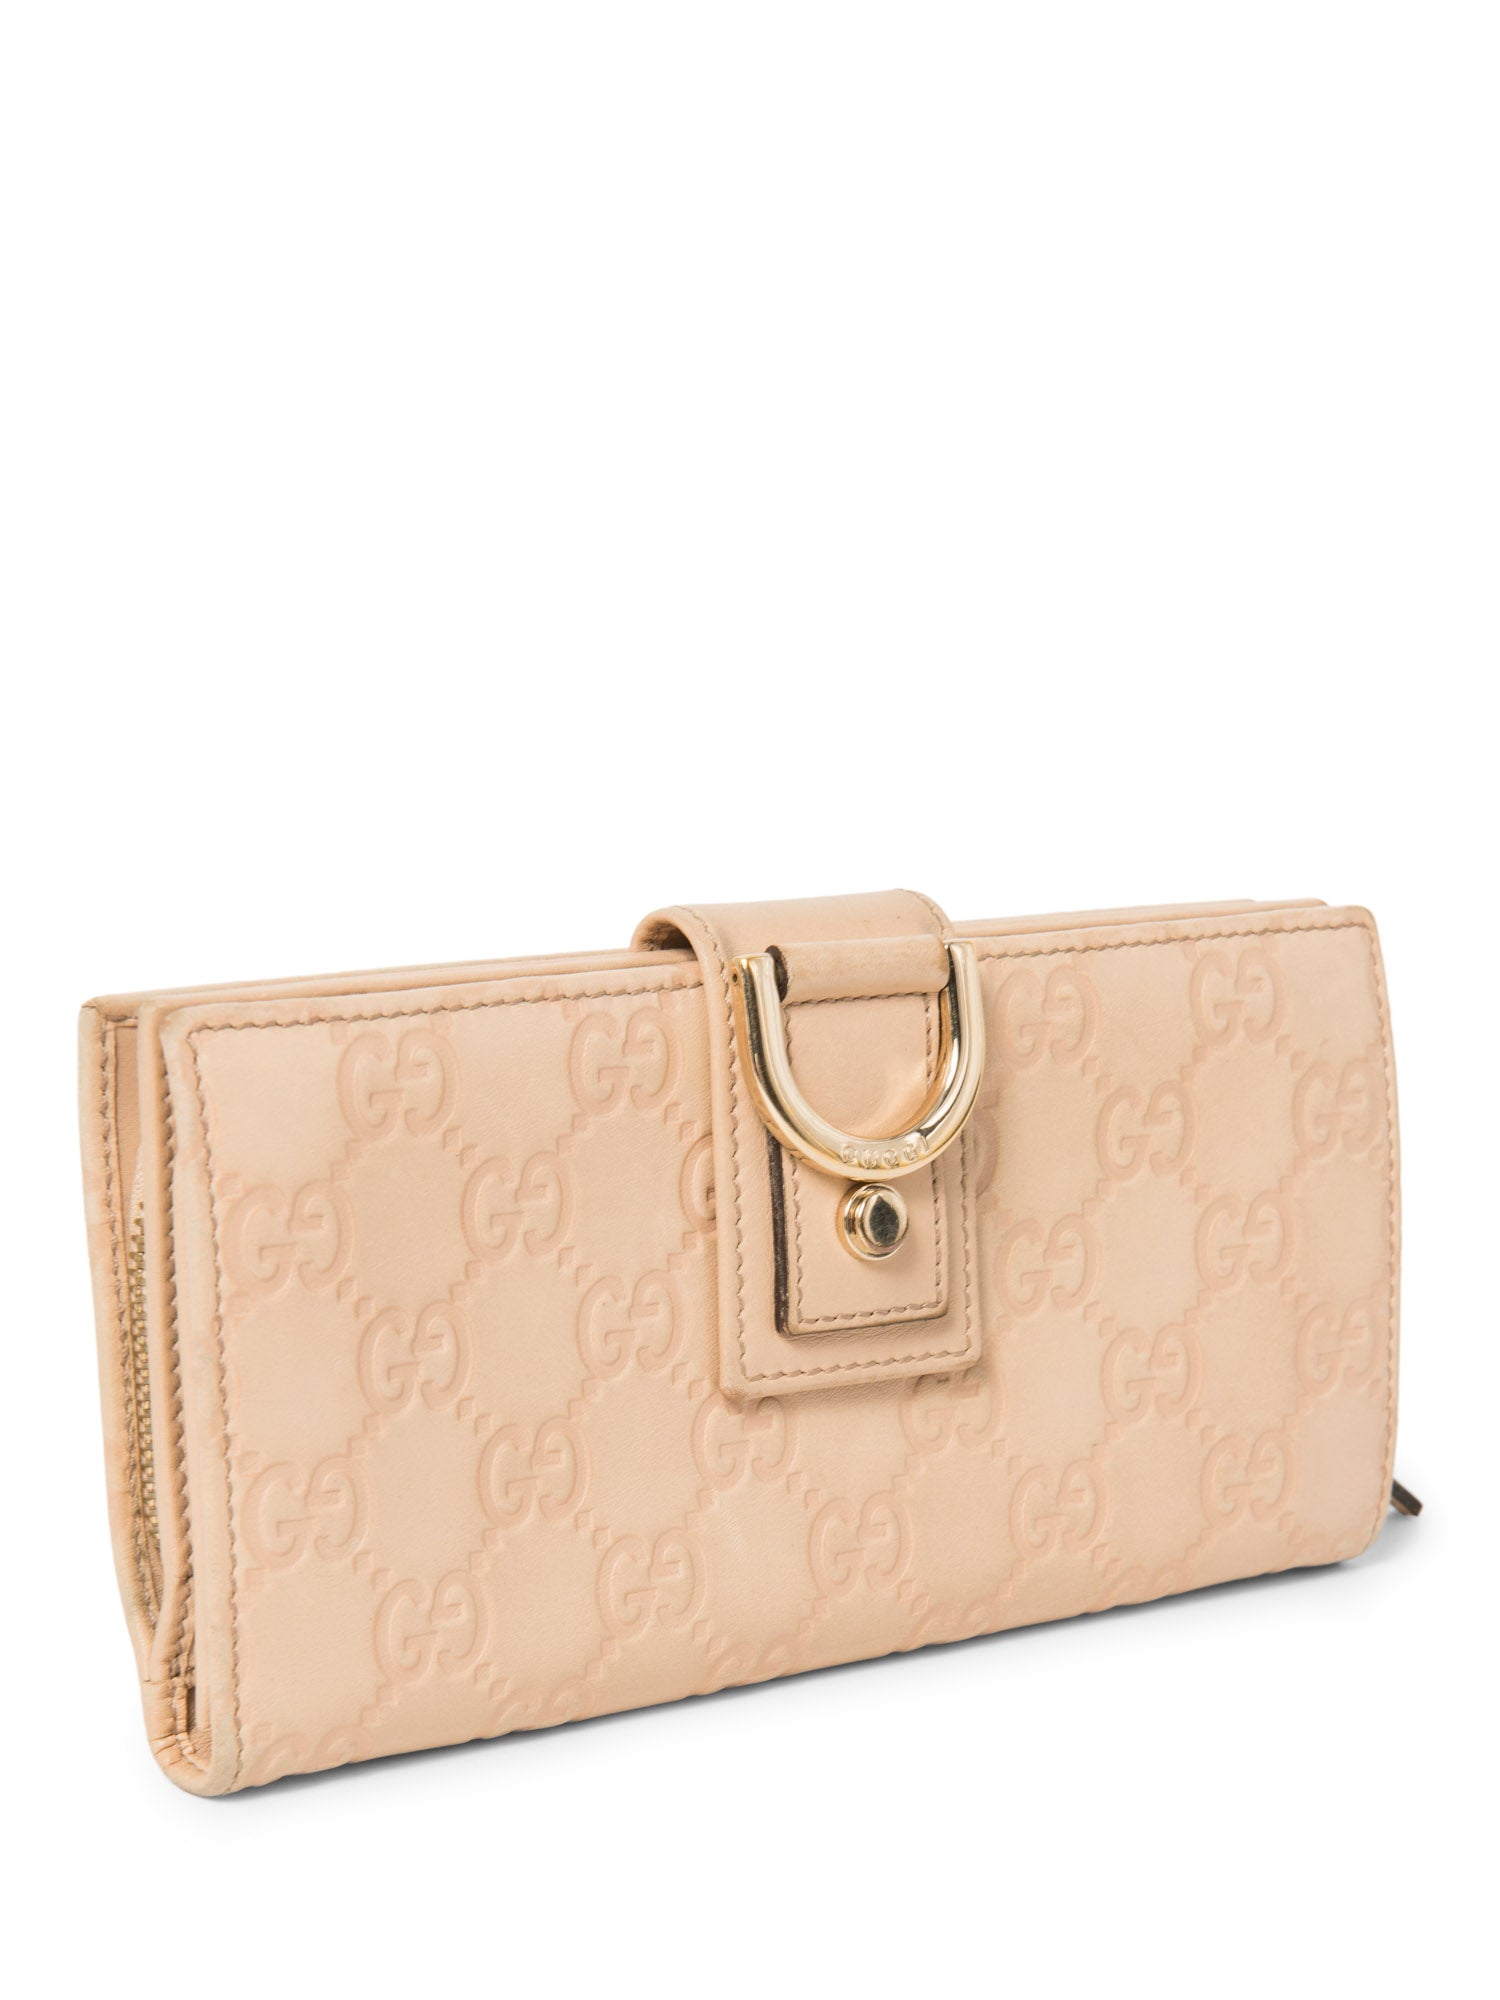 Gucci GG Supreme Leather Embossed Buckle Wallet Blush Pink Gold-designer resale